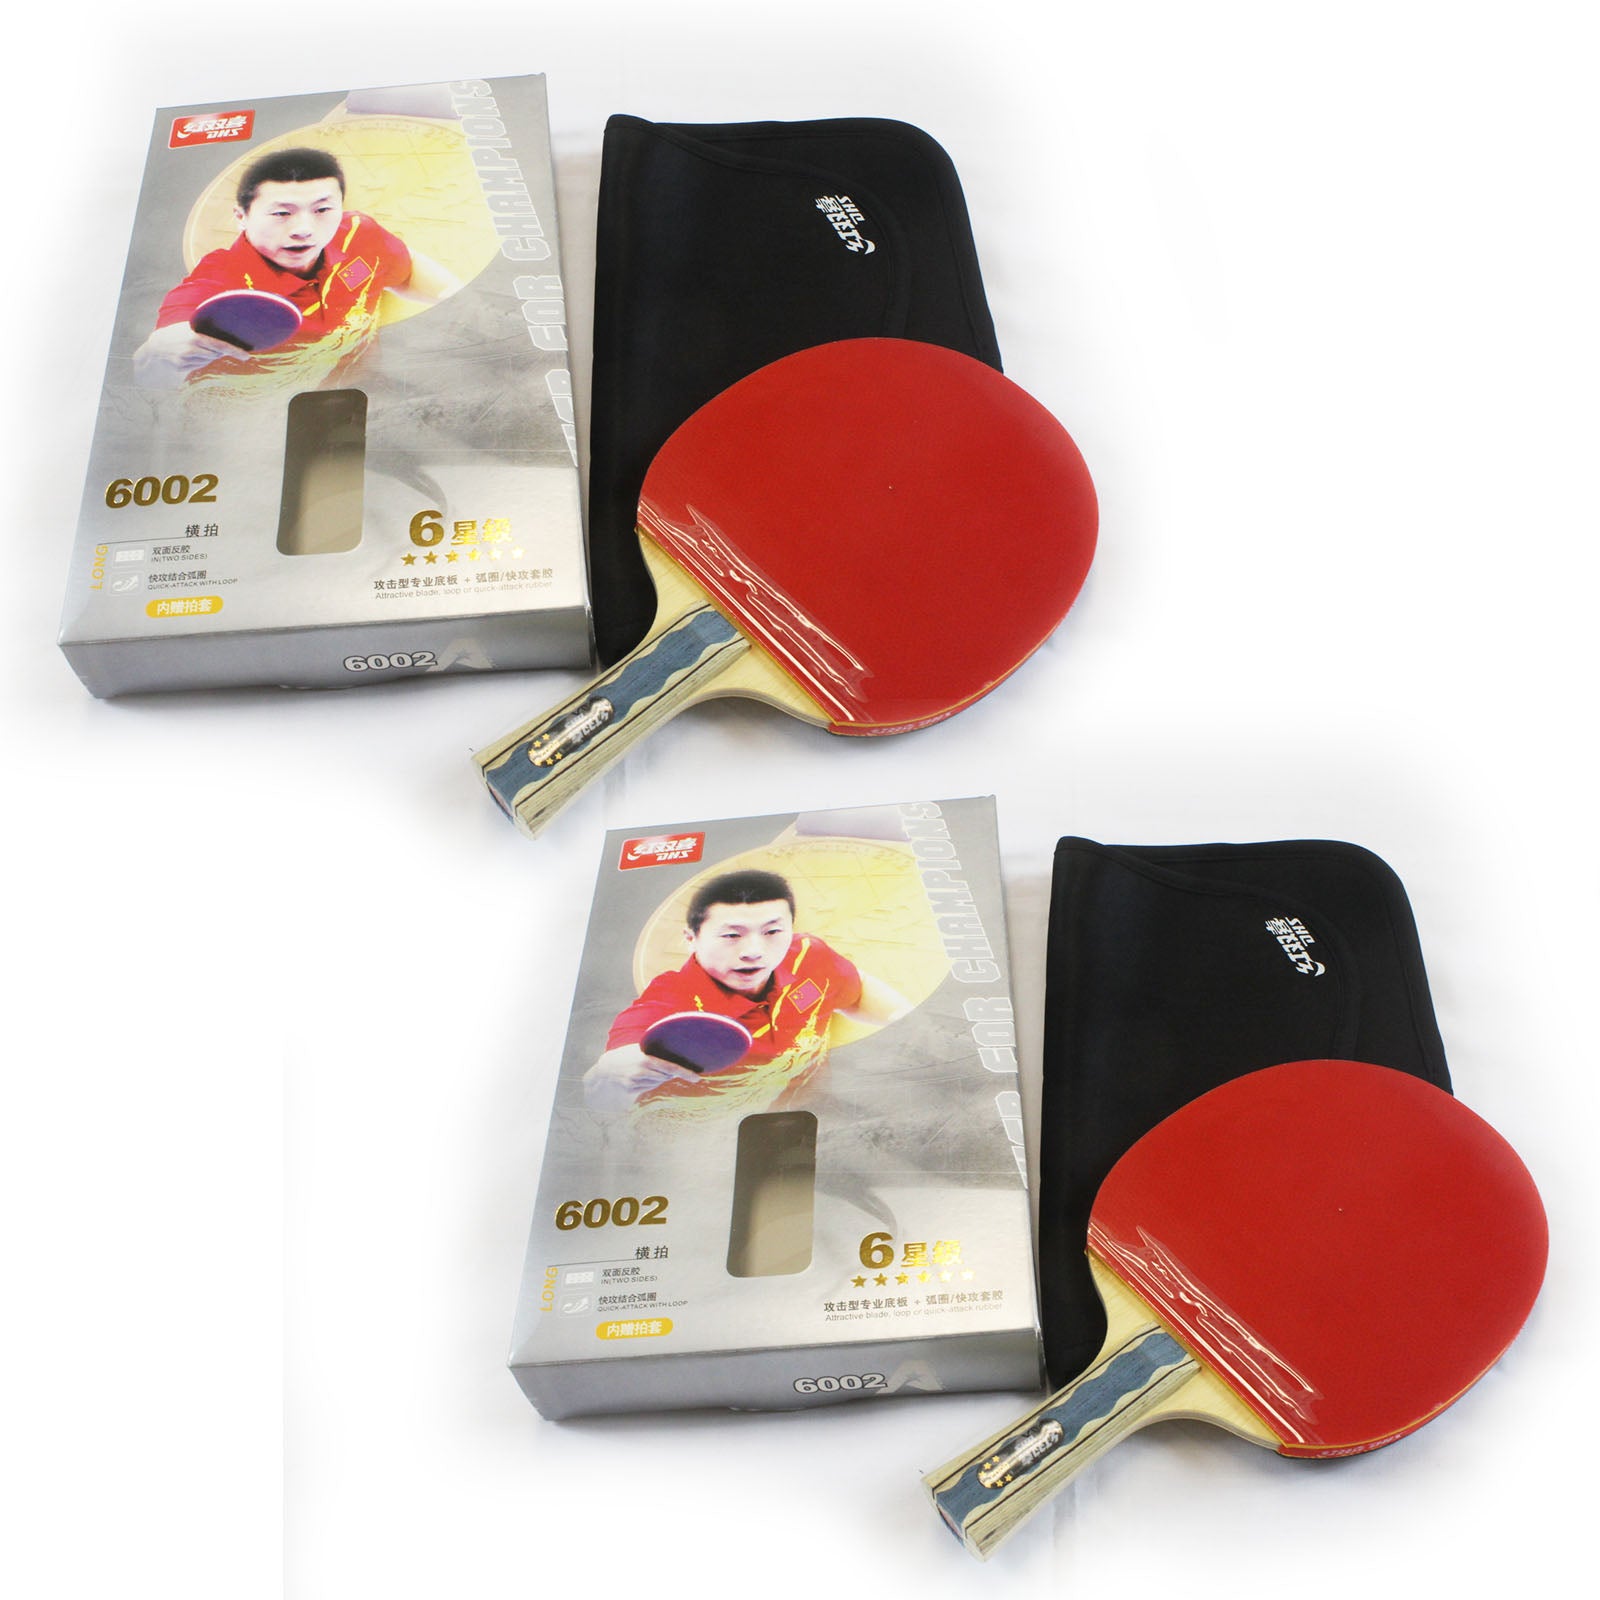 2 X Dhs 6002 Table Tennis Bat Racket Ping Pong Free Bat Case